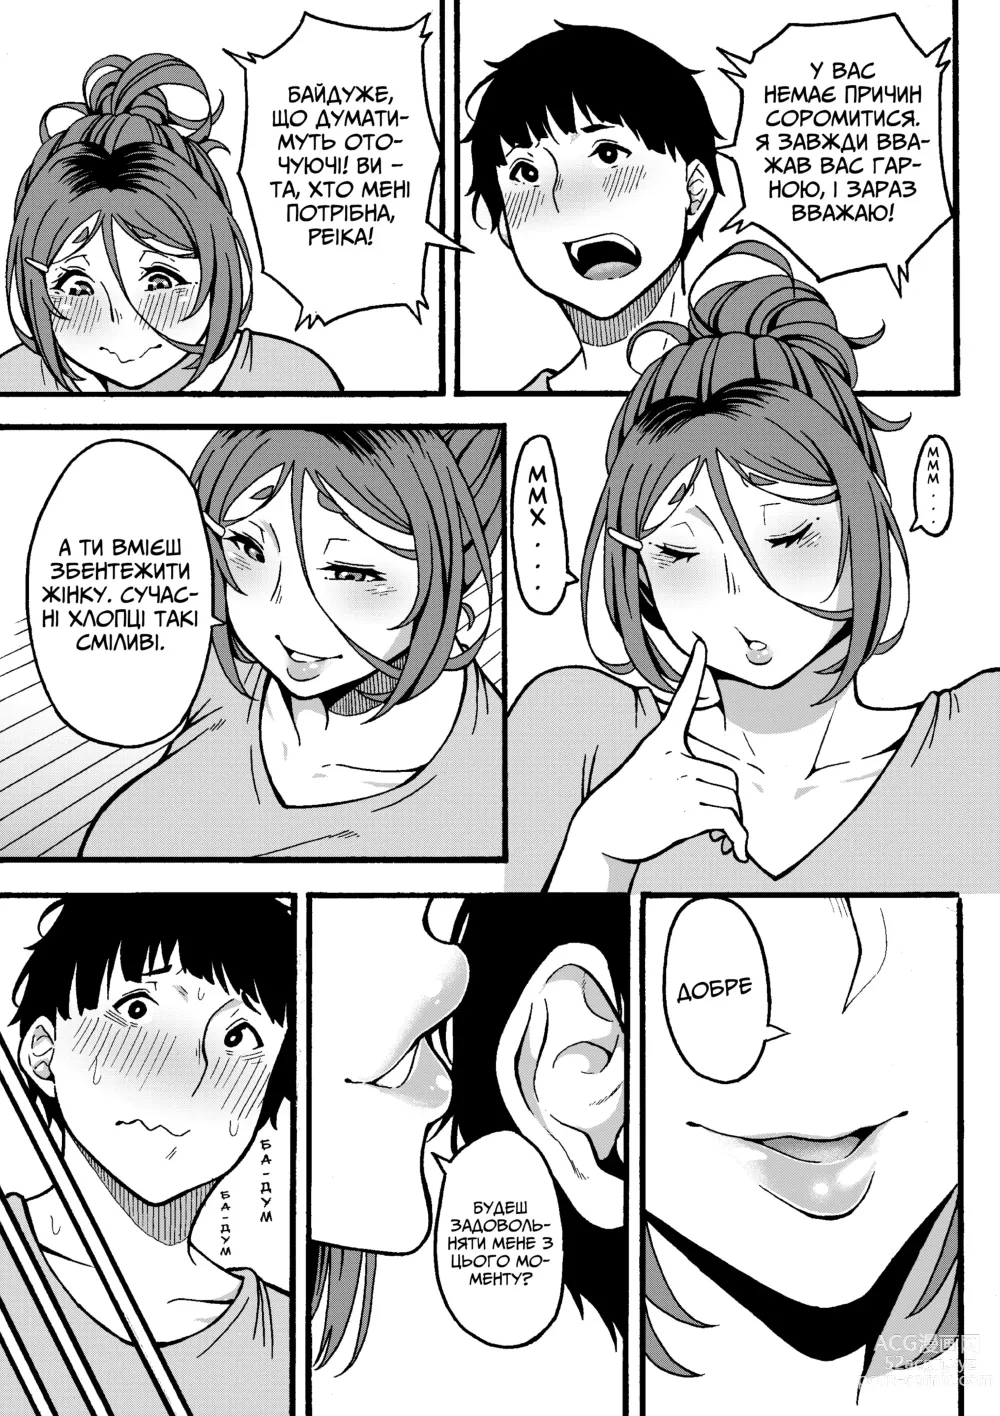 Page 50 of doujinshi Хочеш зробити щось приємне з тітонькою?